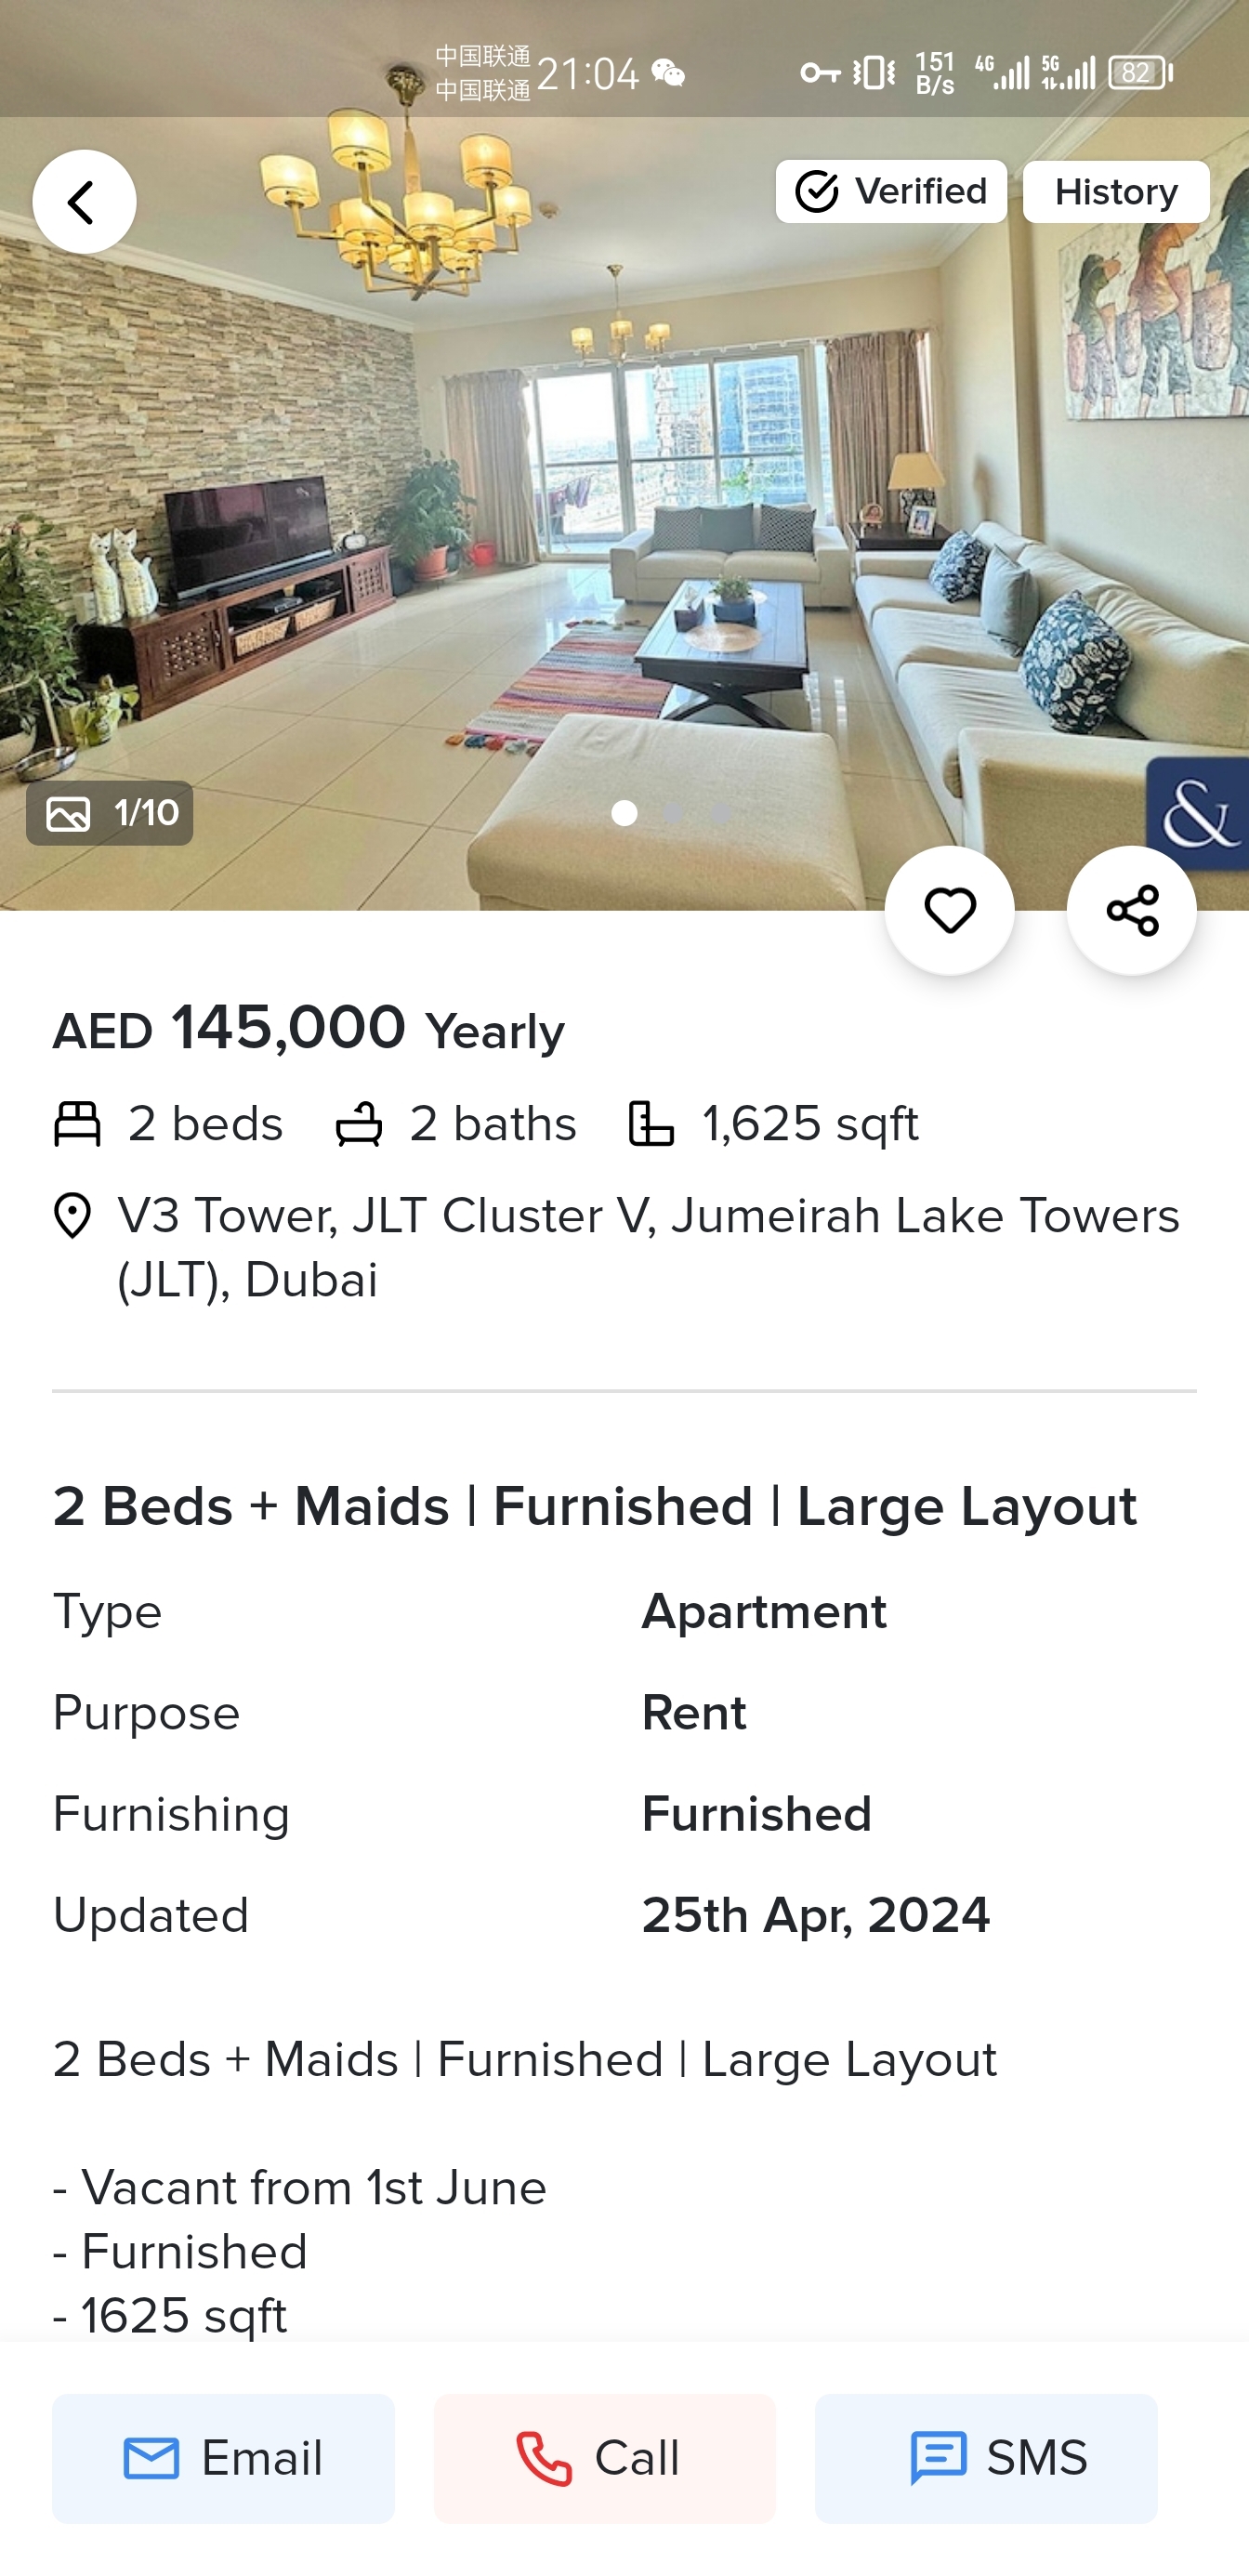 迪拜房子贵吗